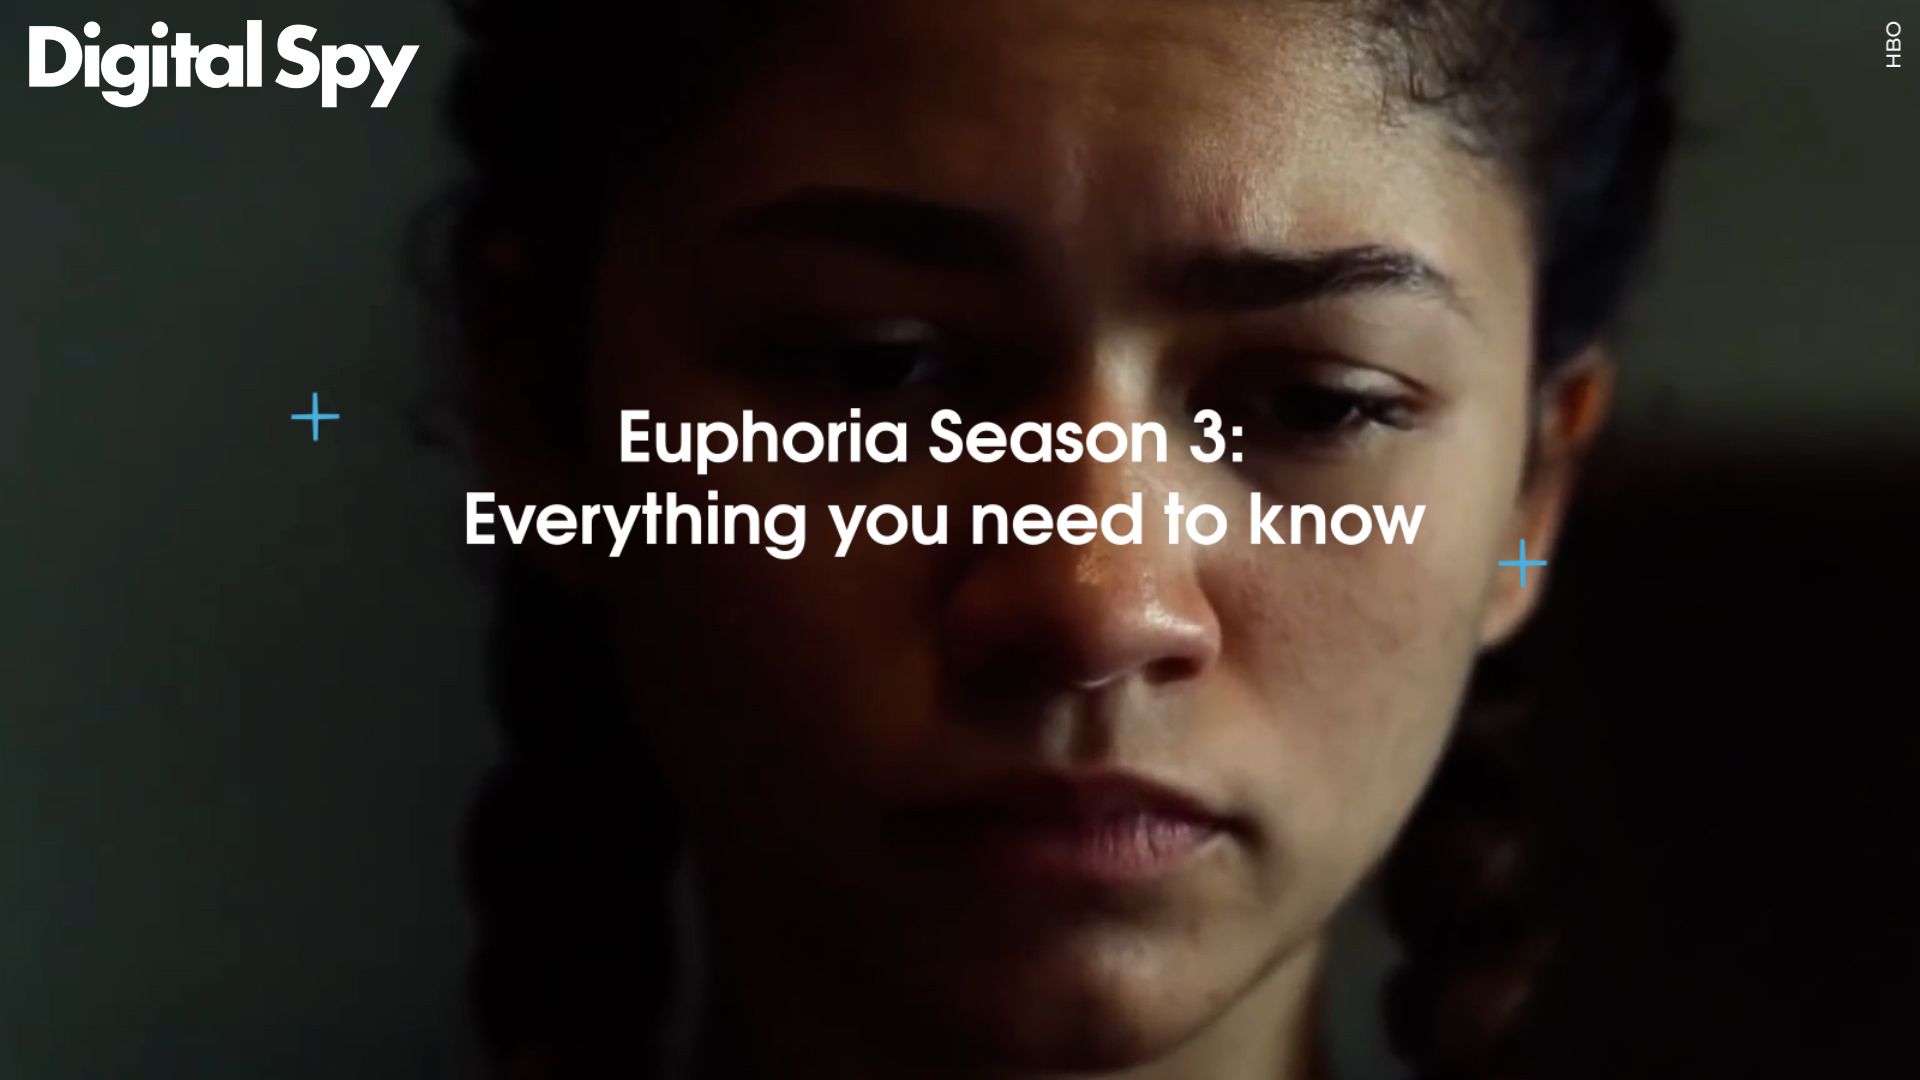 Euphoria Season 3: Cast, Story & Everything We Know